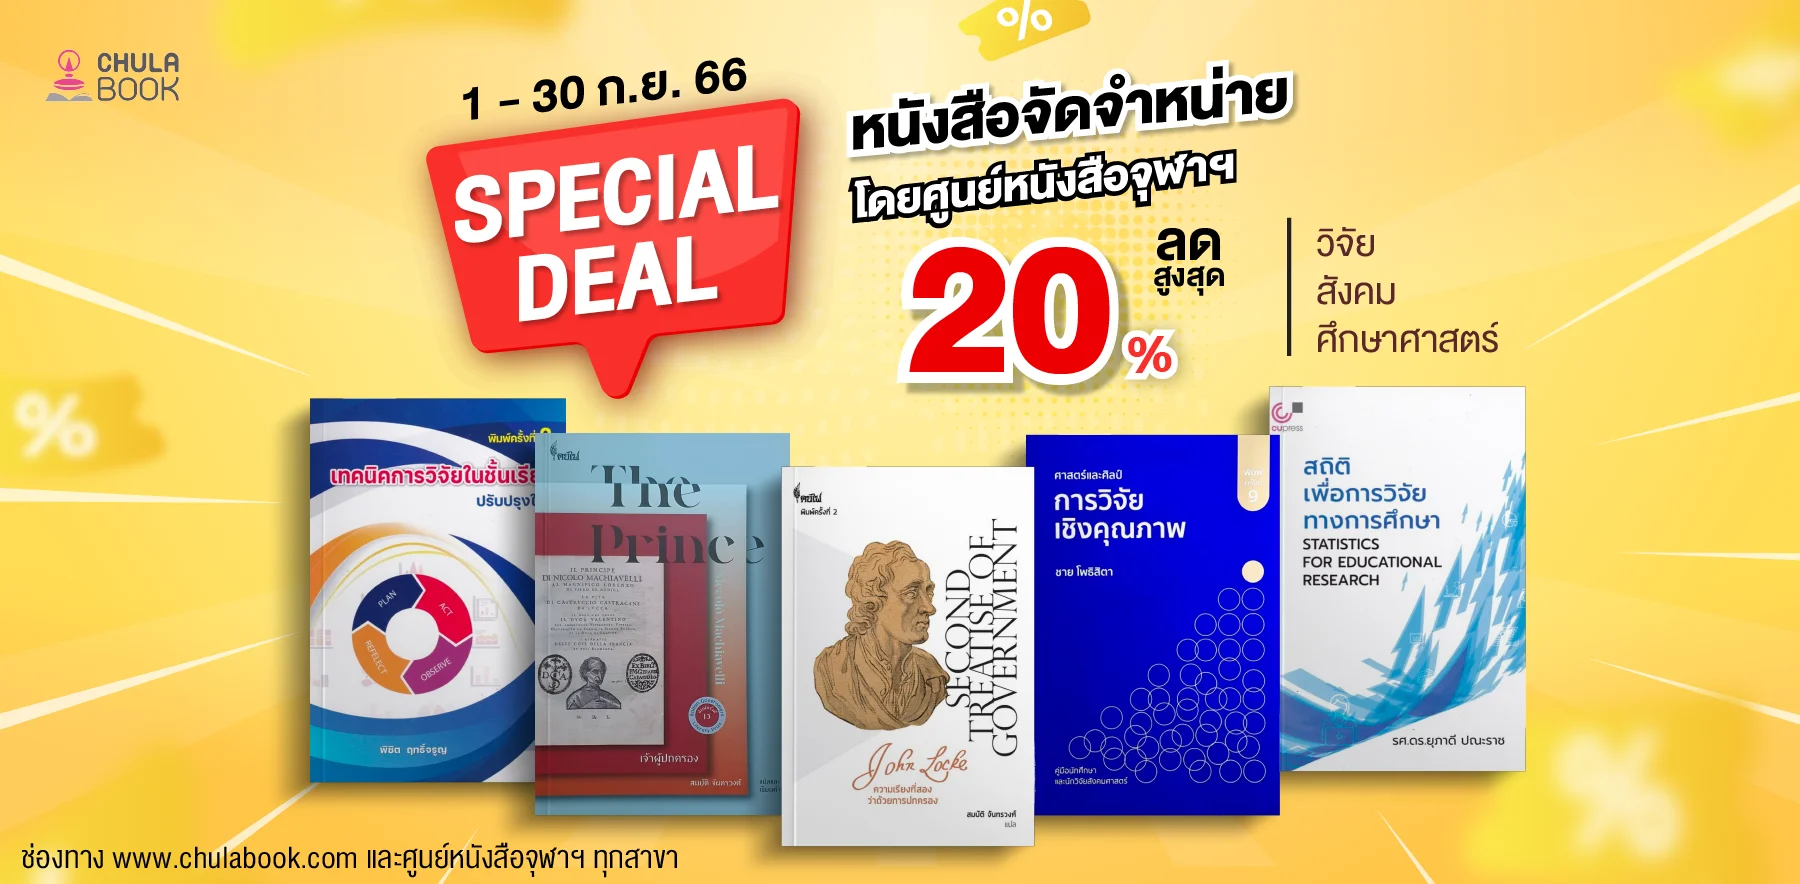 โปรโมชัน Special Deal หนังสือลดราคาพิเศษ 20%